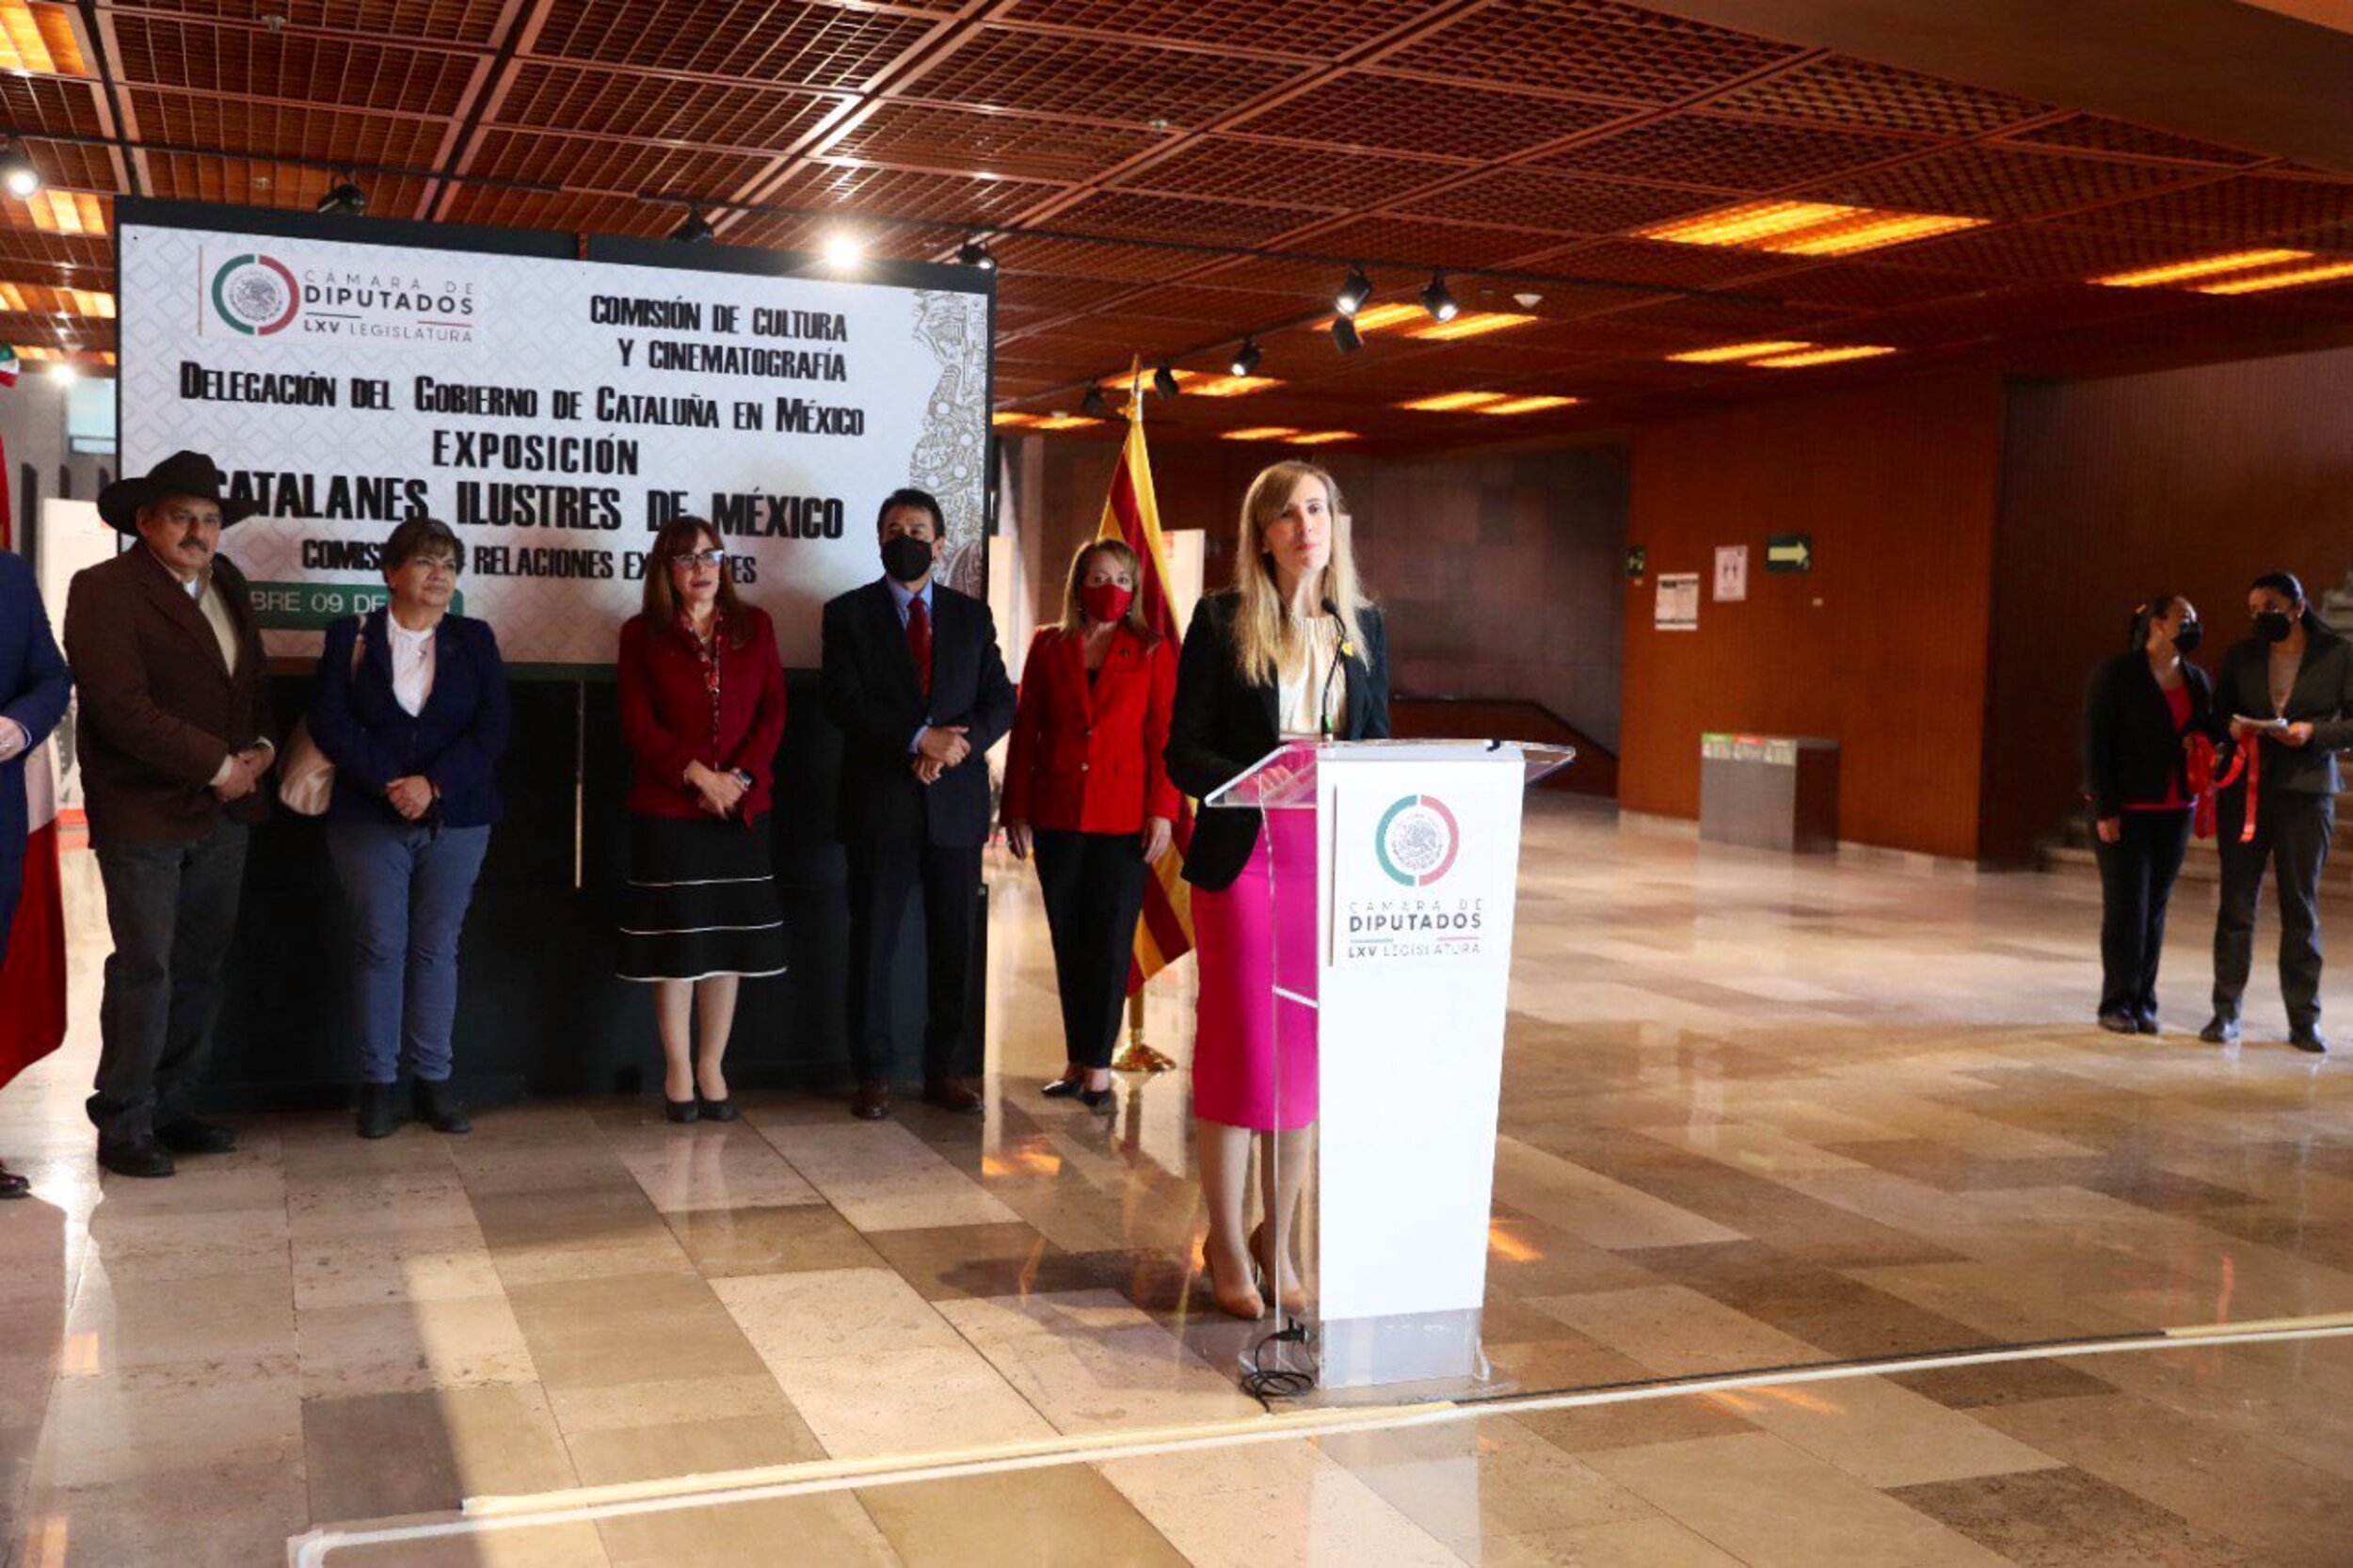 Alsina proposa als diputats mexicans crear un grup d'amistat amb Catalunya